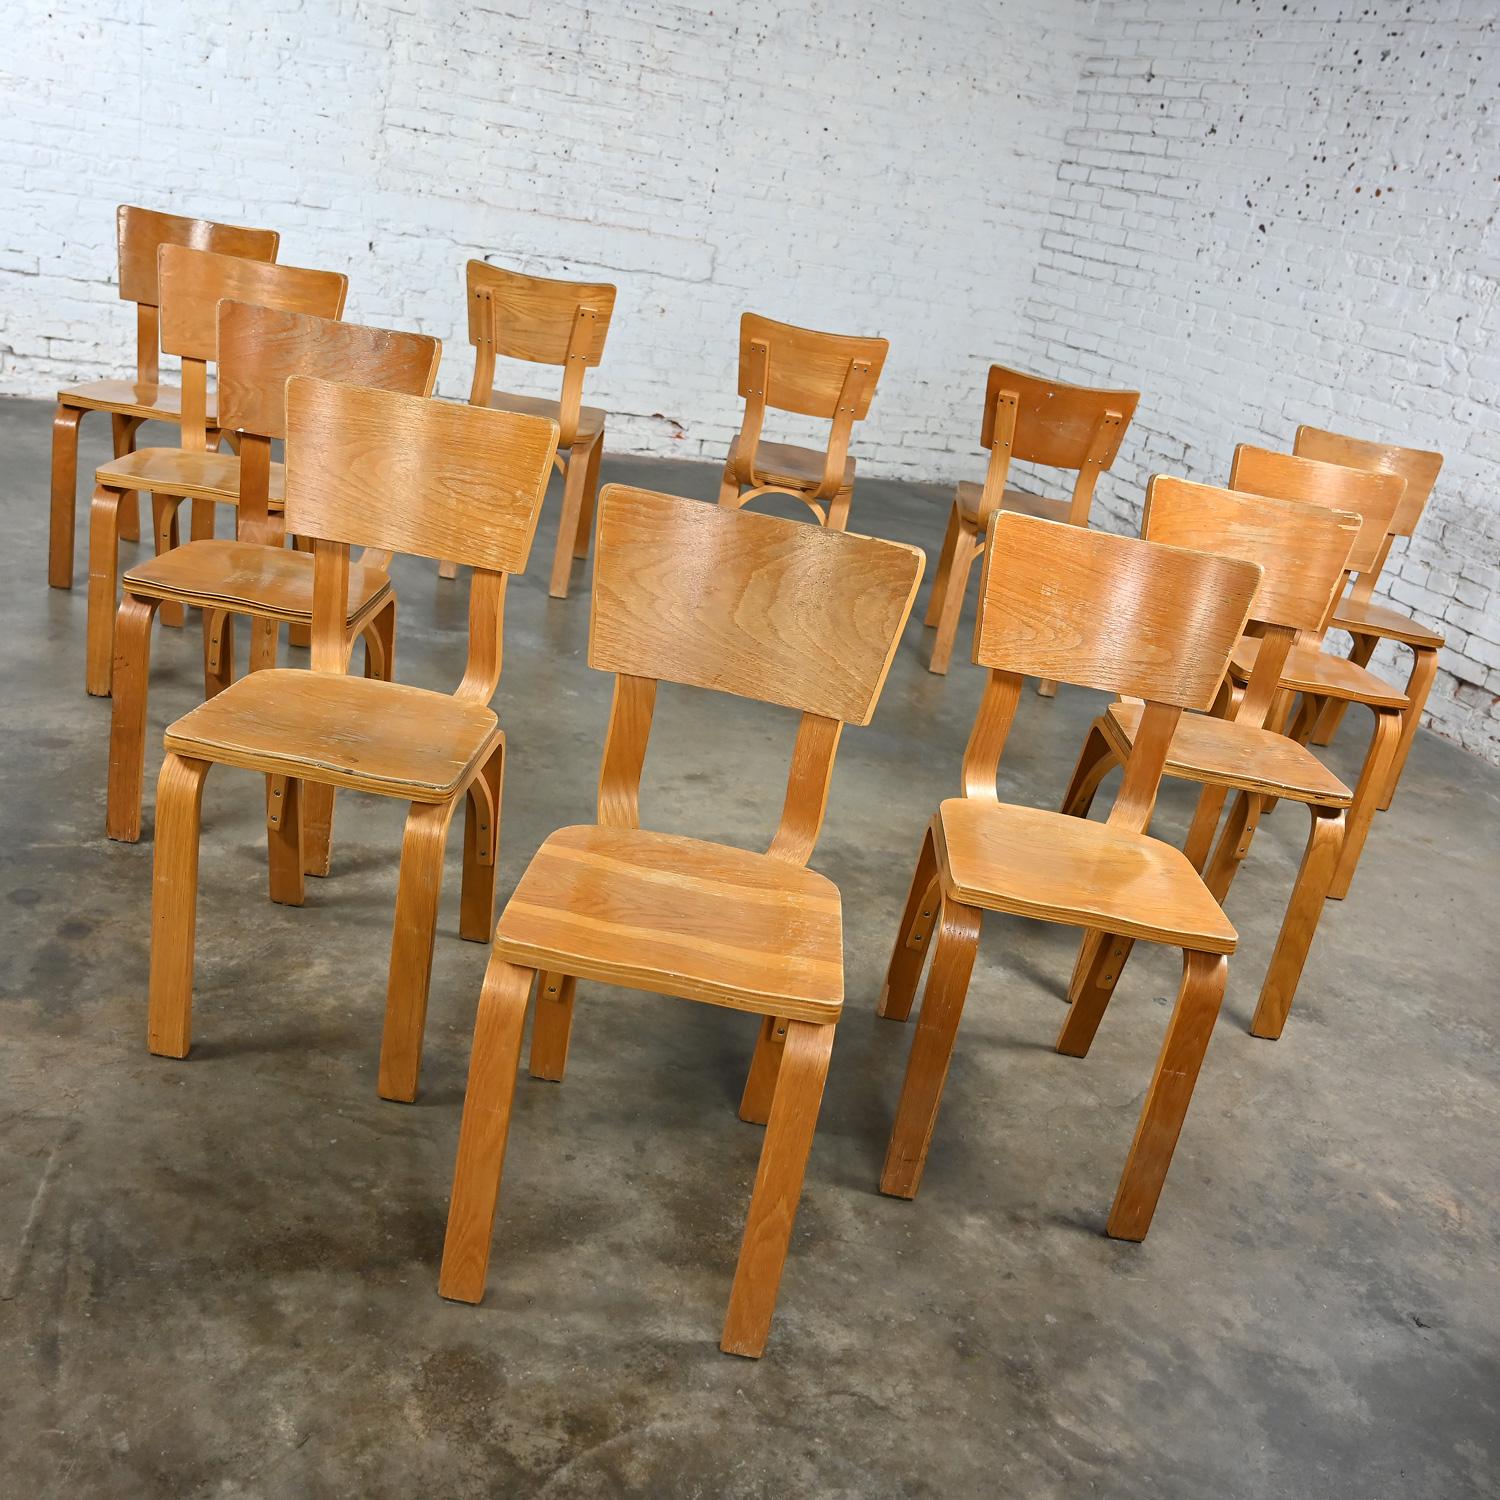 Merveilleuses chaises de salle à manger Thonet #1216-S17-B1 en contreplaqué de chêne courbé avec des sièges en forme de selle et un seul dossier en forme d'arc, ensemble de 12. Byit, en gardant à l'esprit qu'il s'agit d'une pièce vintage et non pas